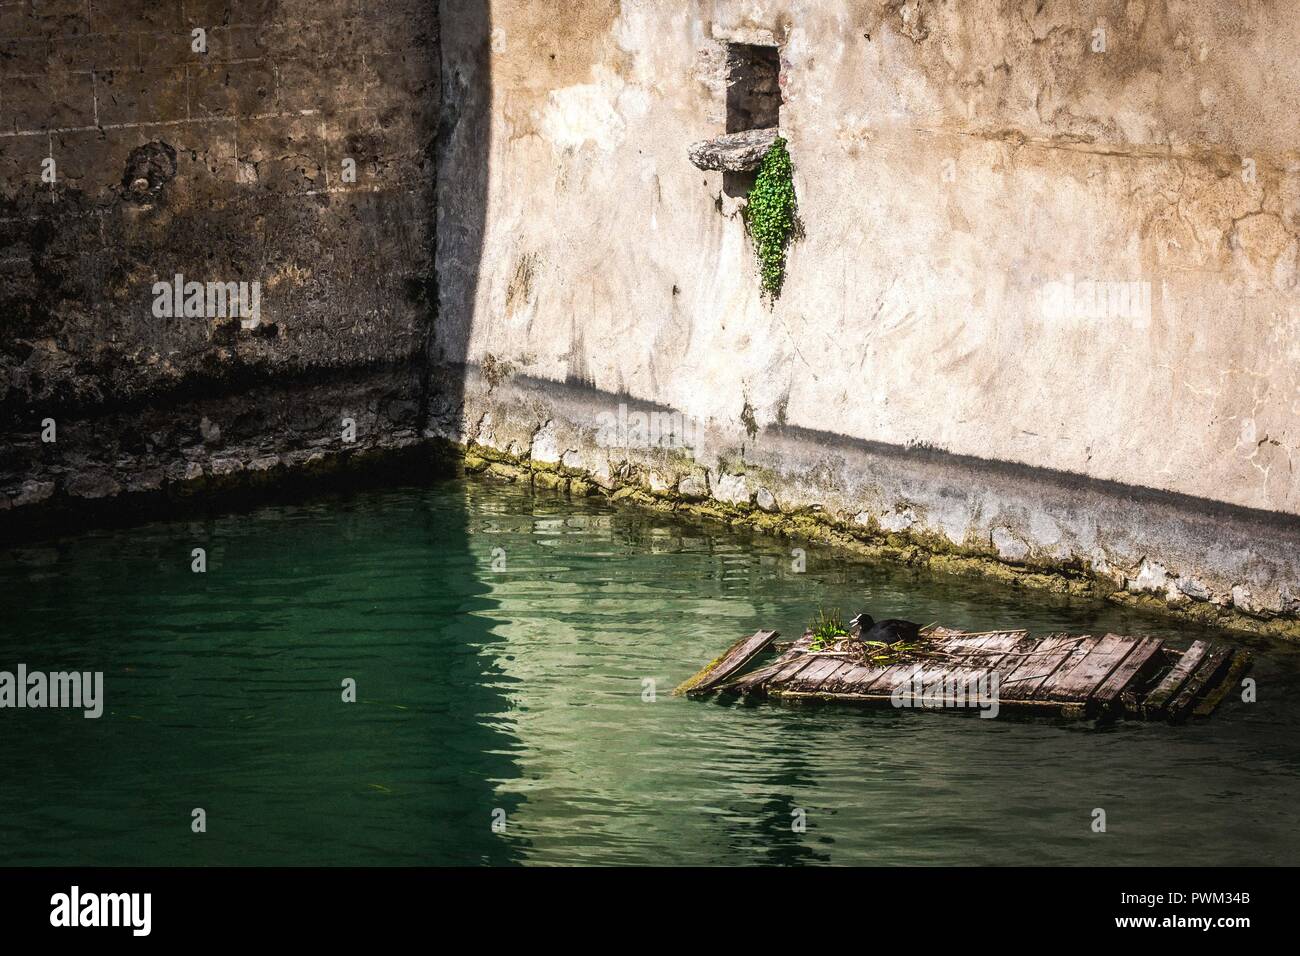 Un American coot nidi nel fossato della rocca Scaligera nella città galleggiante, Sirmione. Sirmione è in Lombardia, Italia. Foto Stock